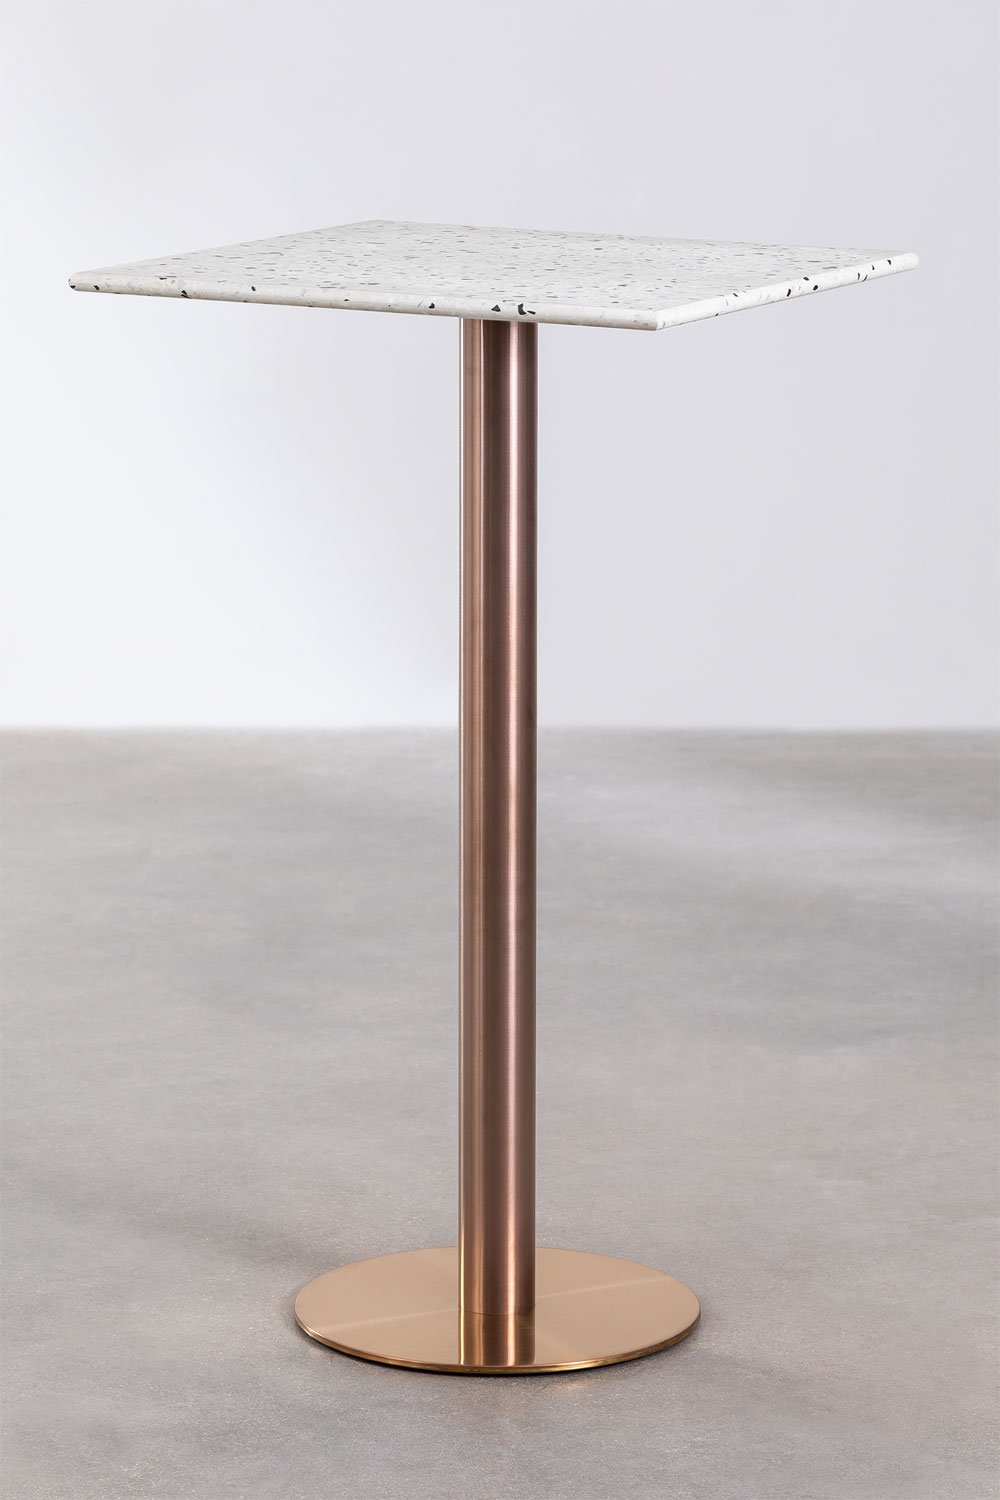 Kwadratowy wysoki stół barowy z lastryko (60x60 cm) Malibu, obrazek w galerii 1